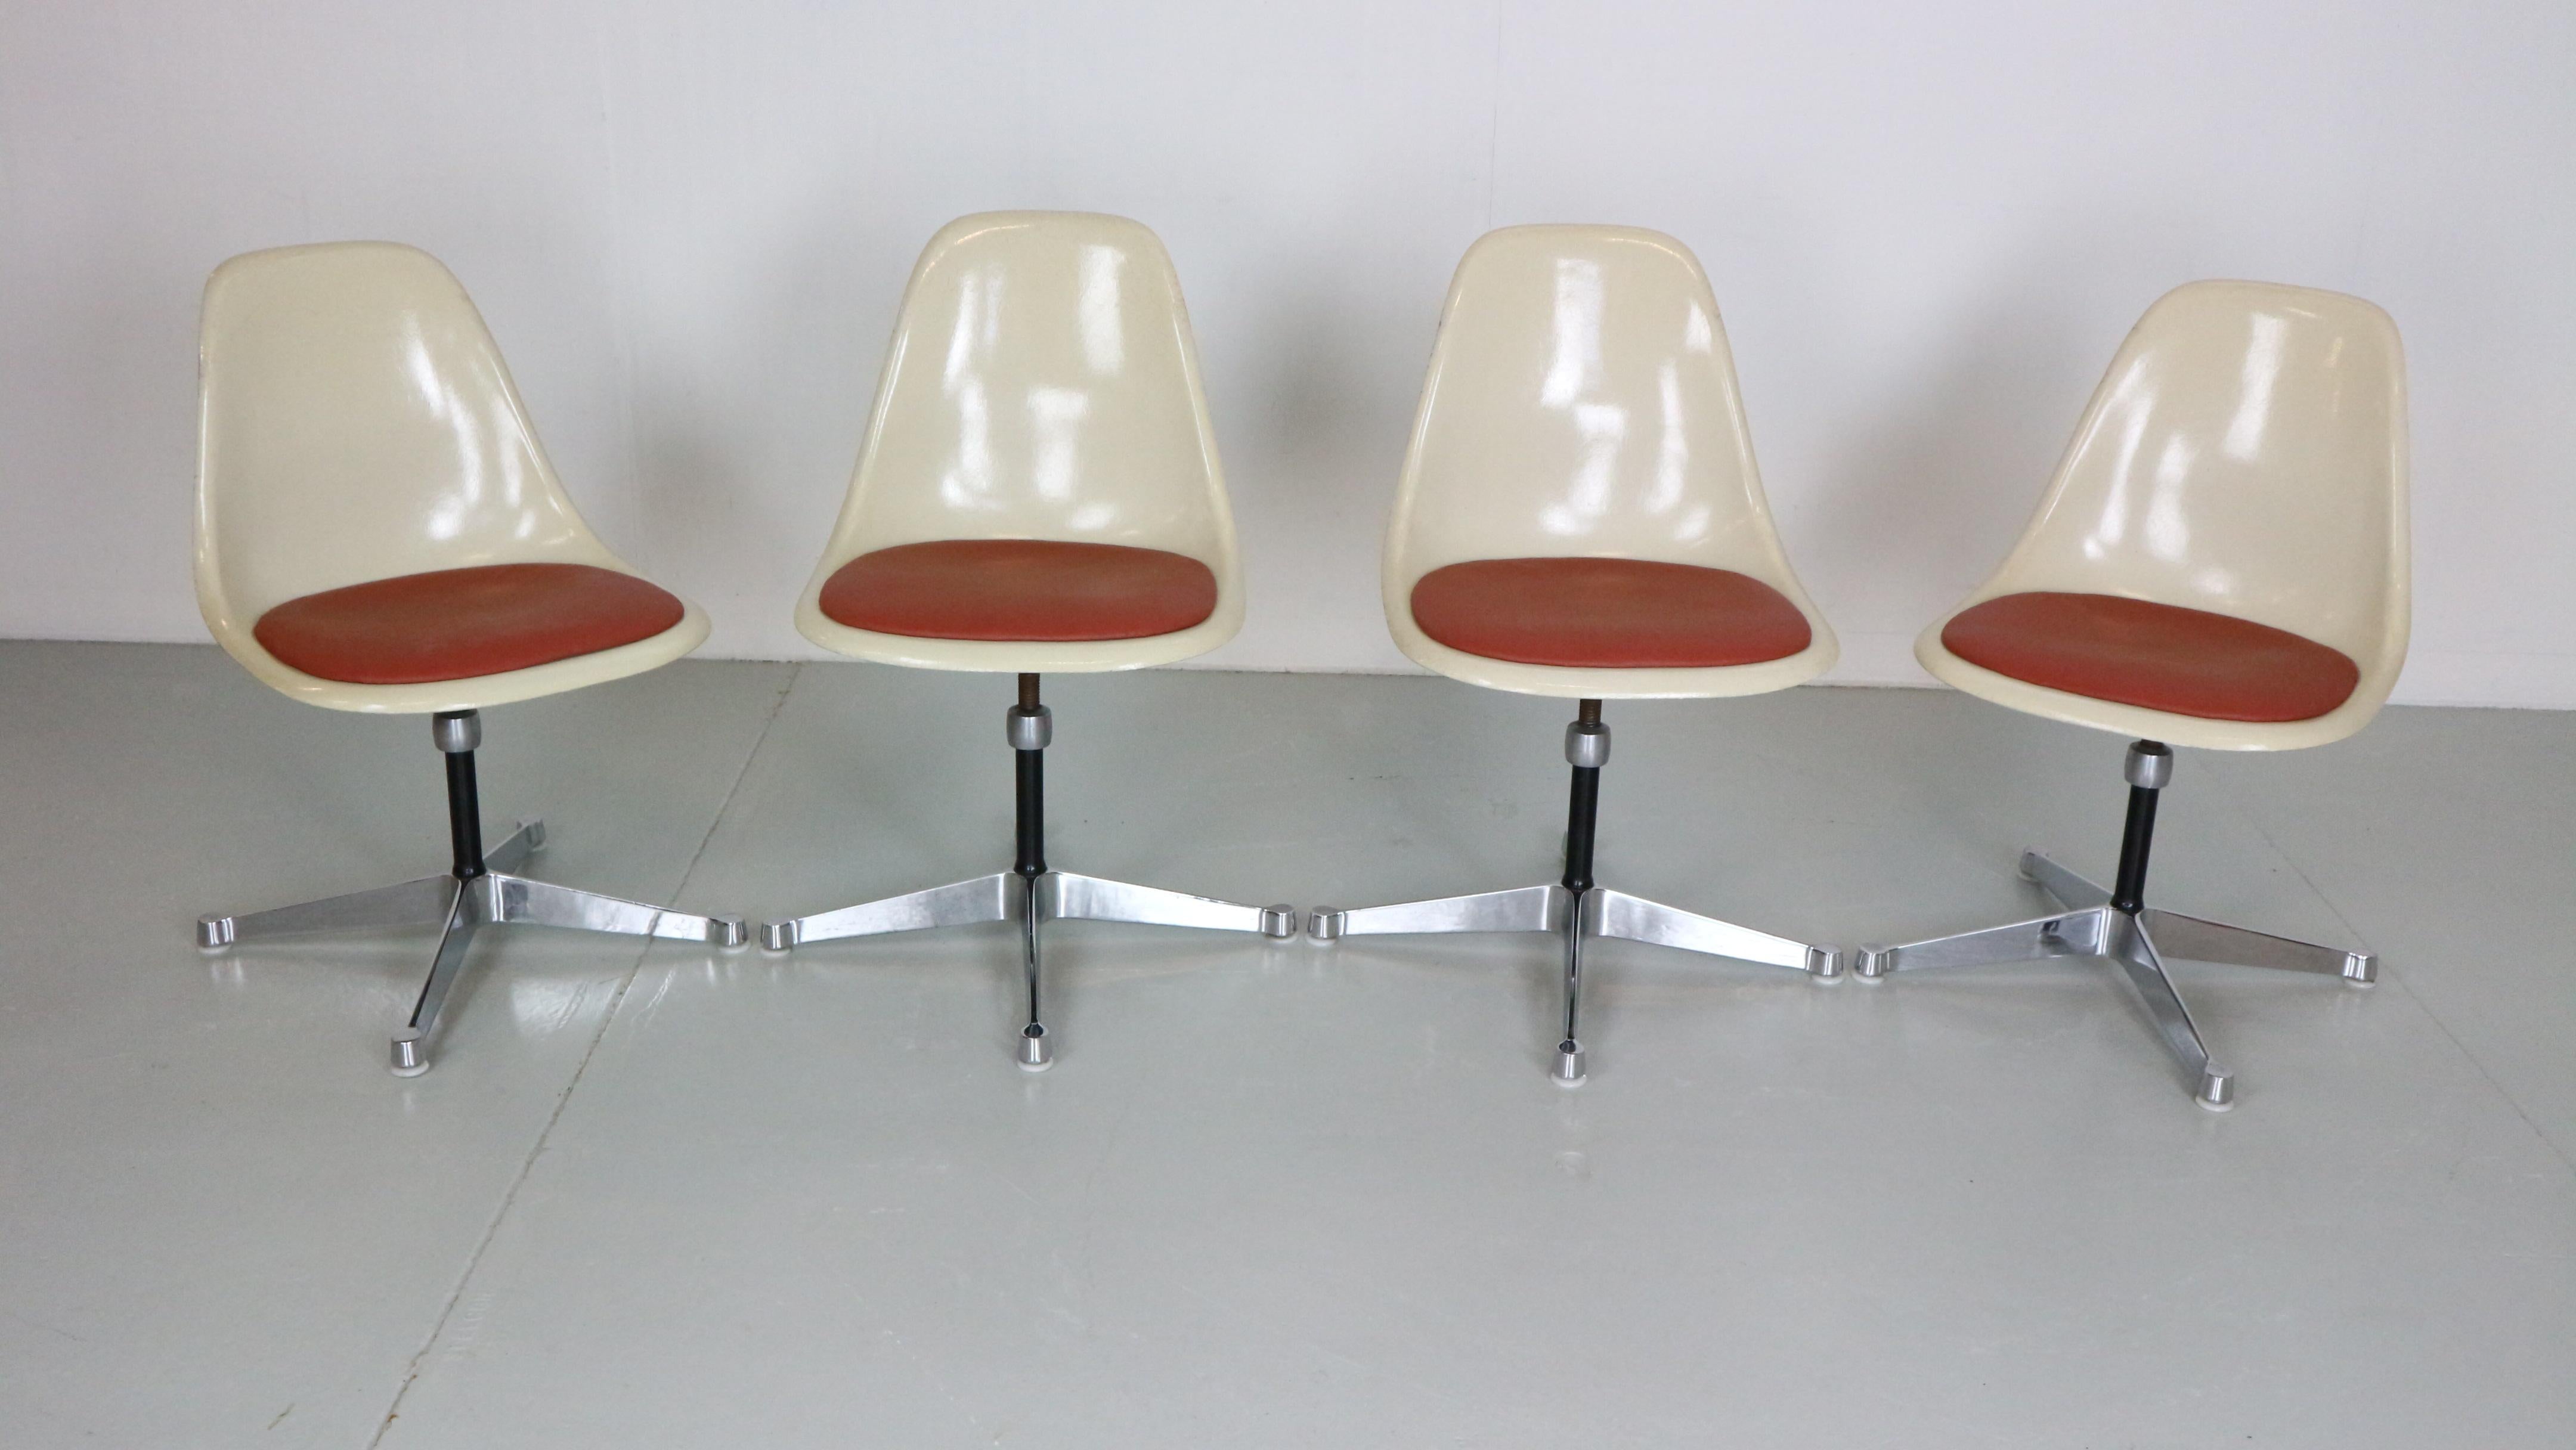 Ensemble de 4 chaises conçues par Charles& Ray Eames et fabriquées pour Herman Miller dans les années 1960 environ, États-Unis.

Les chaises sont dans leur état d'origine. Marqué sous la base.
Fabriqué en fibre de verre avec des coussins d'assise